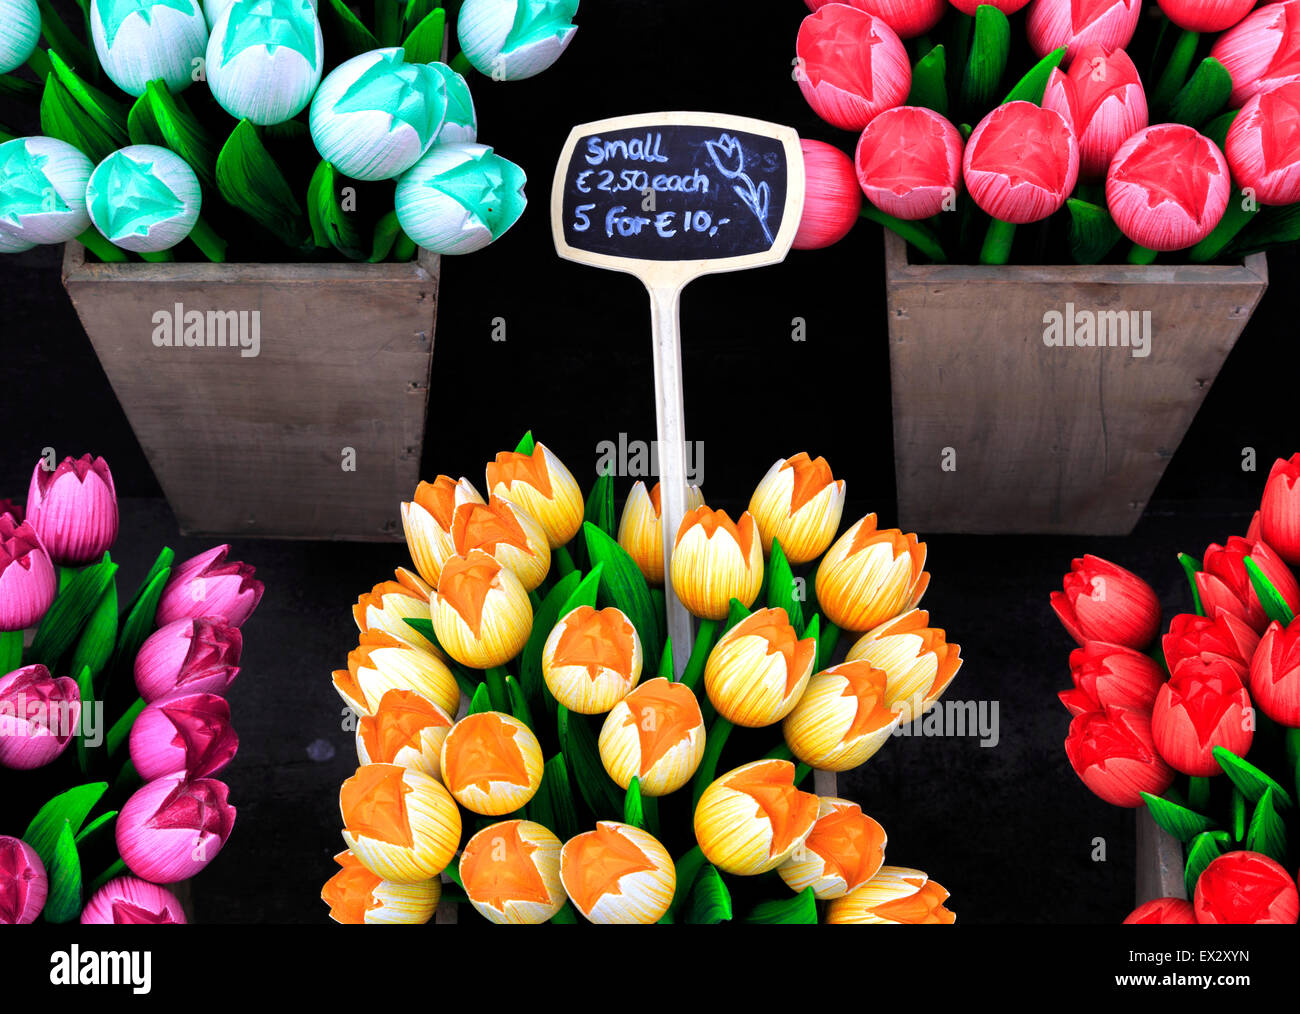 Tulipes en bois colorés, des souvenirs populaires de Hollande, à vendre à un magasin de souvenirs à Delft, Hollande méridionale, Pays-Bas. Banque D'Images